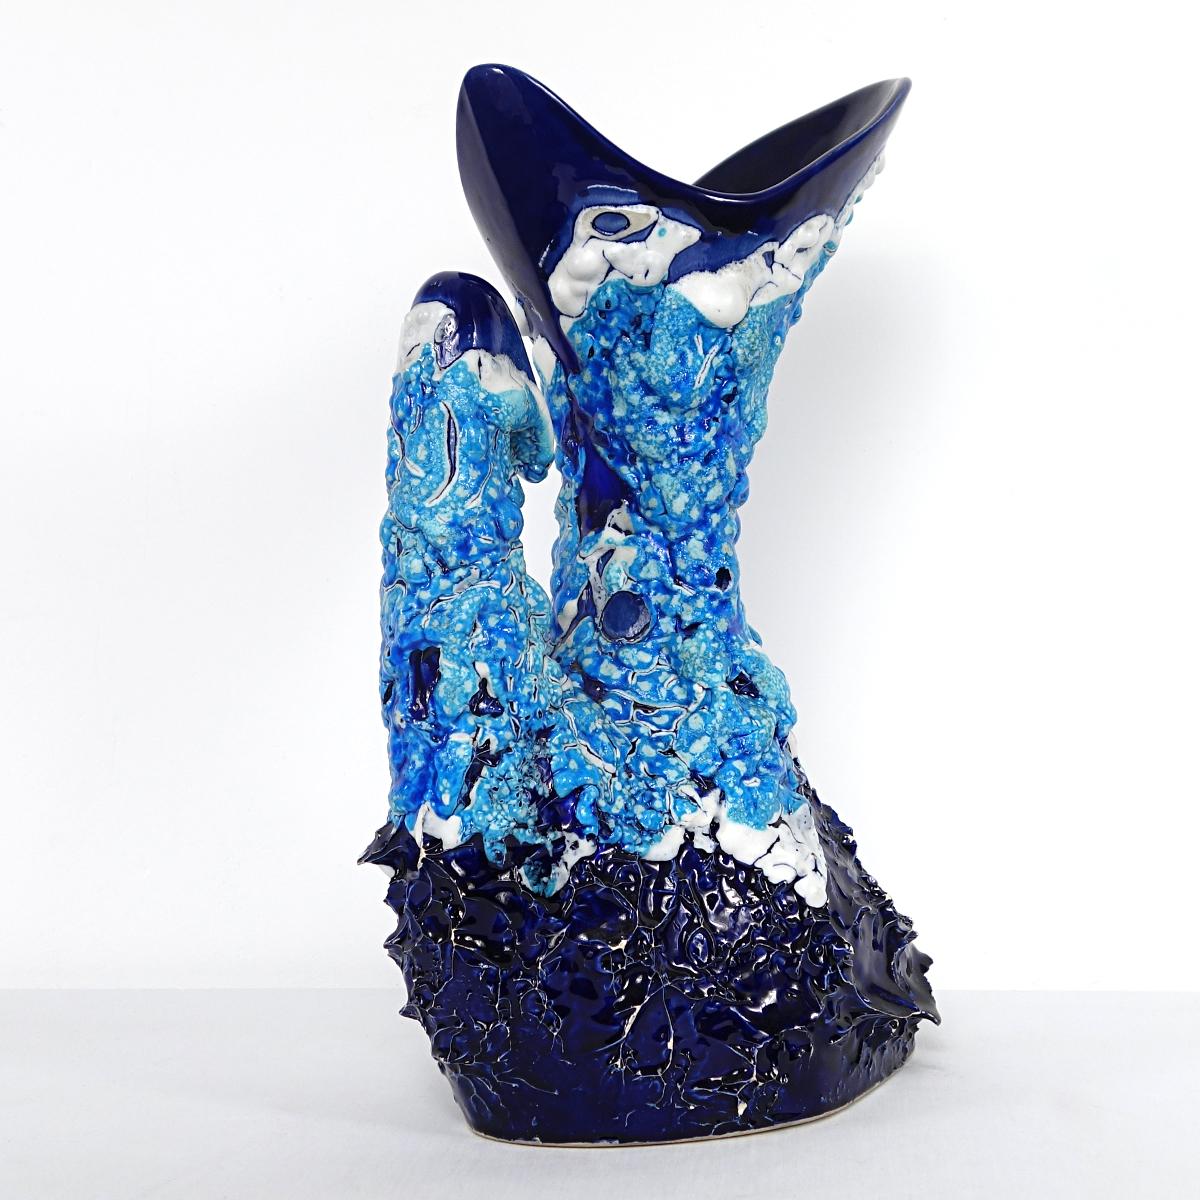 Mit ihrer Höhe von 40 cm (15.8 inch), ihrer zauberhaften Form und ihren ansprechenden blauen Farben sticht diese Vase wirklich aus der Masse heraus.
1950s. Unterzeichnet Vallauris.